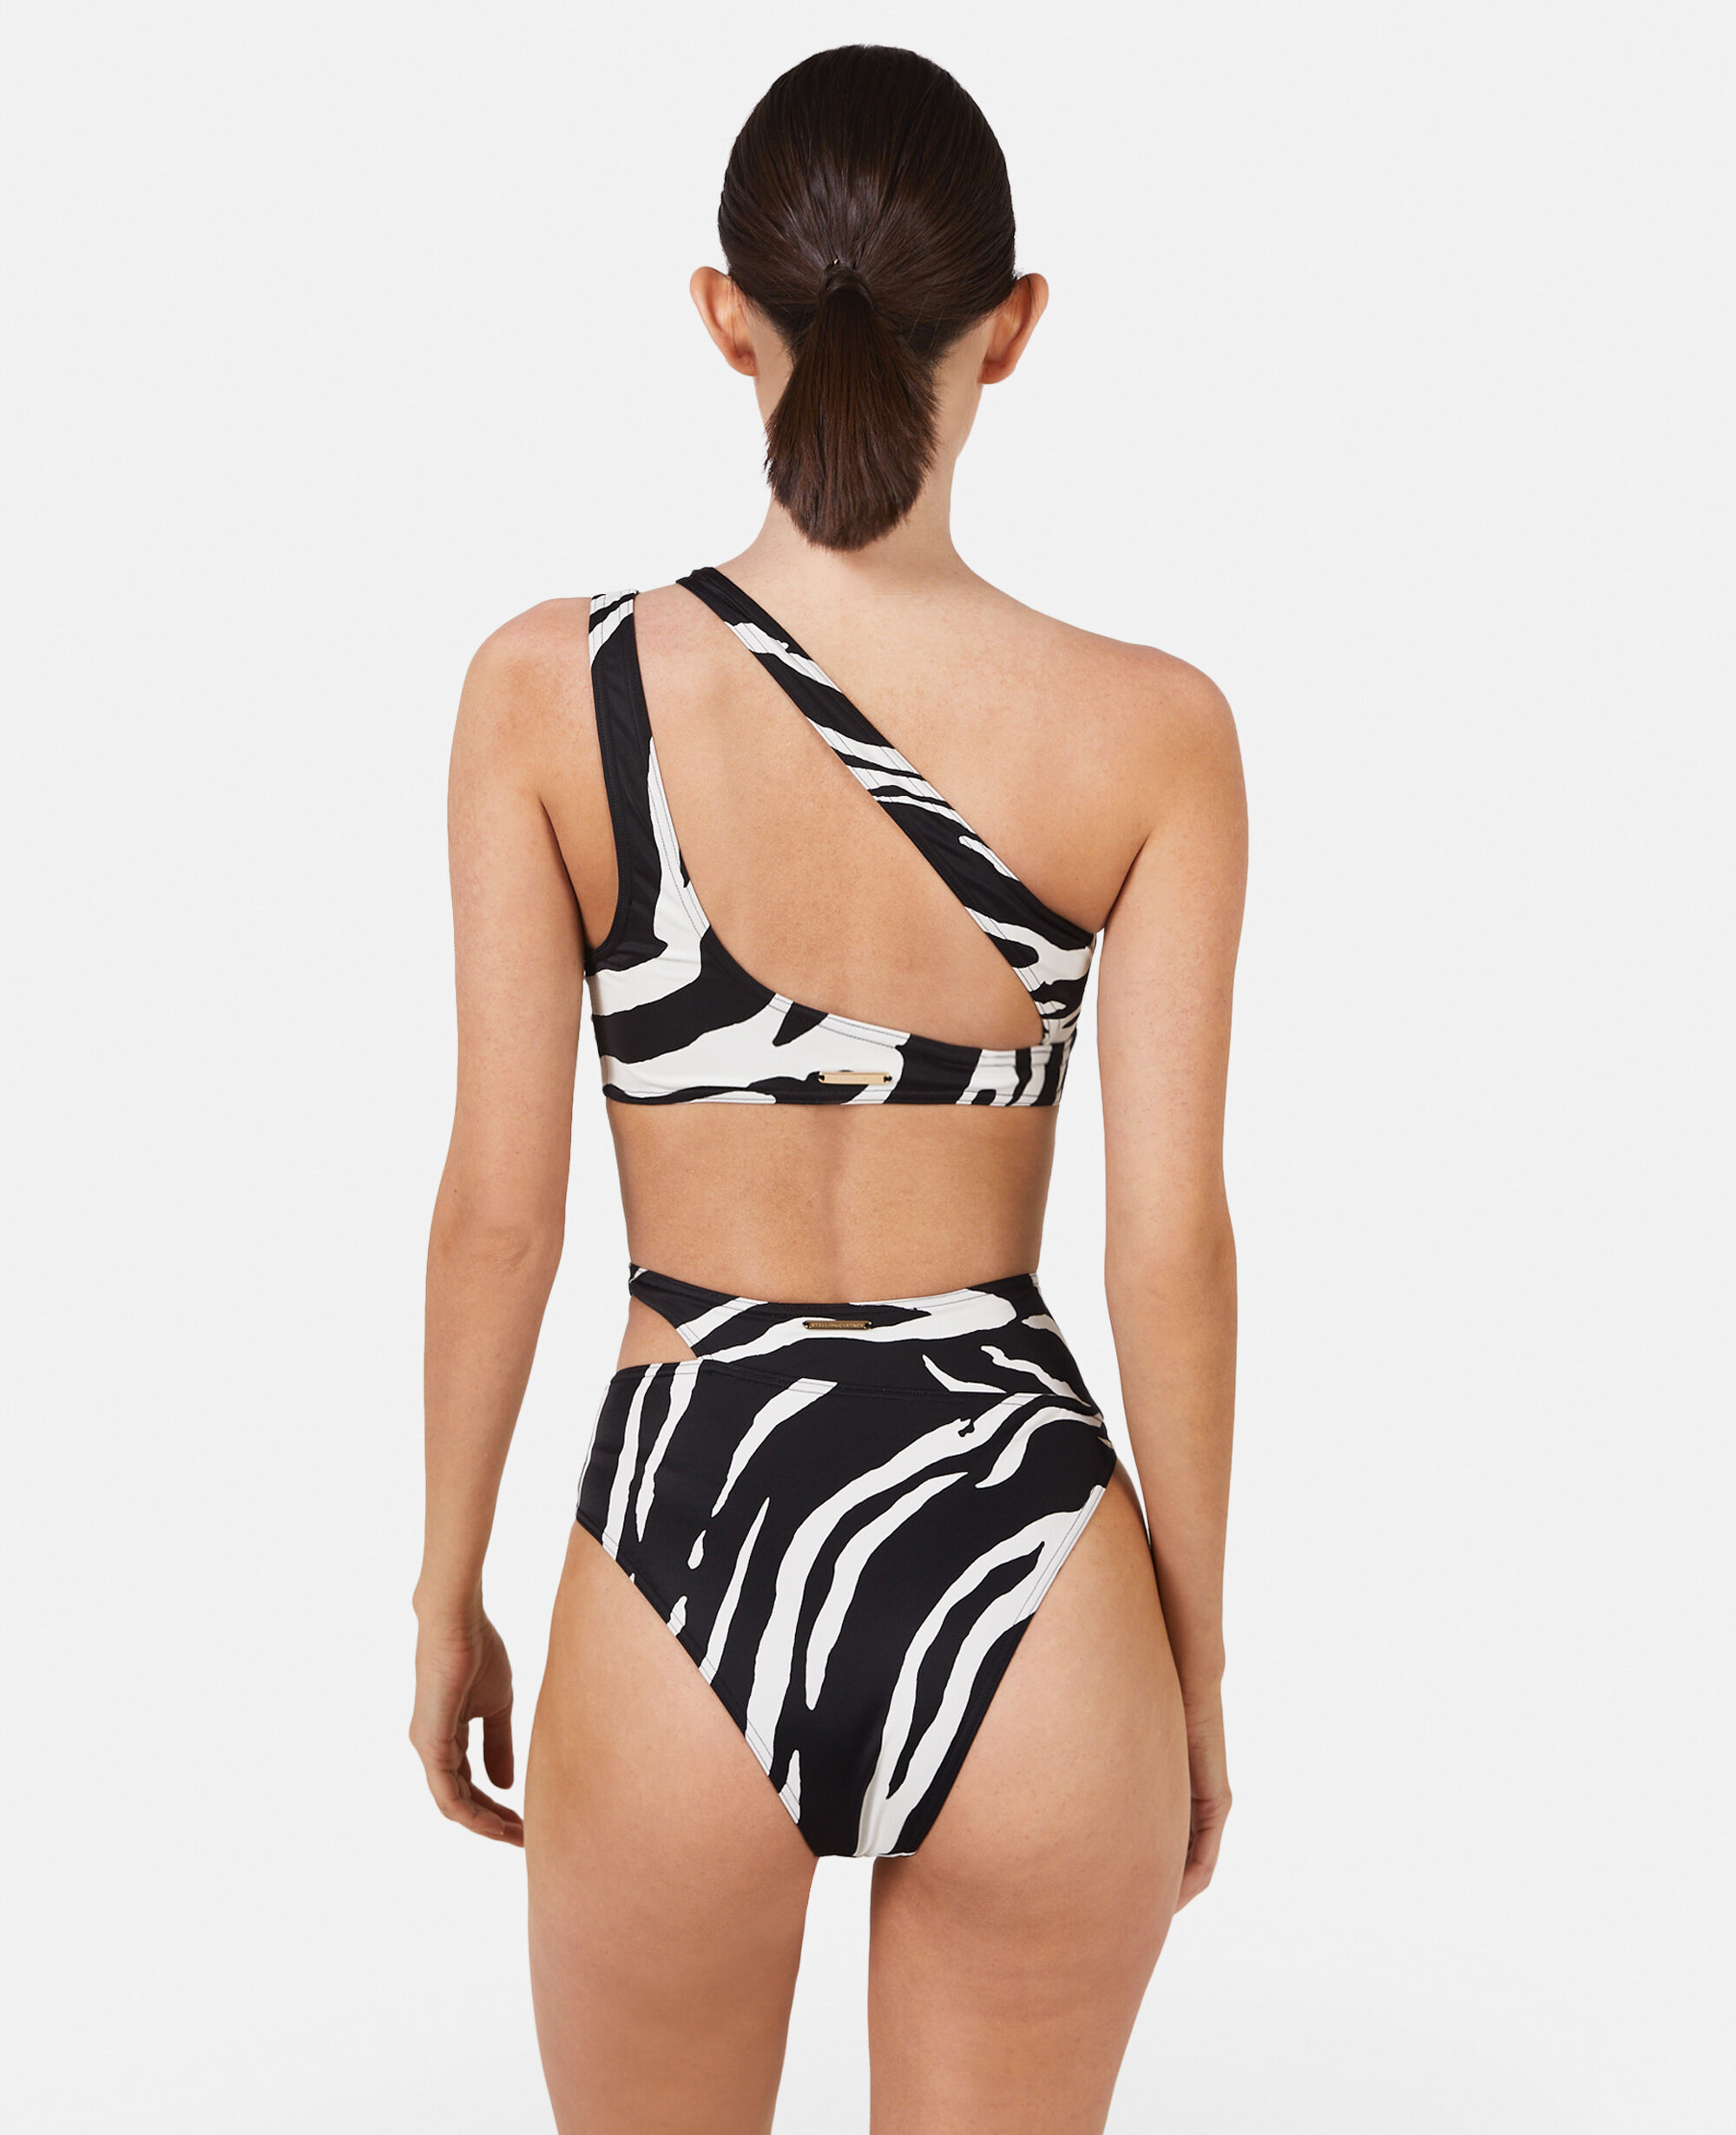 Women's Luxury Swimwear | Stella McCartney US